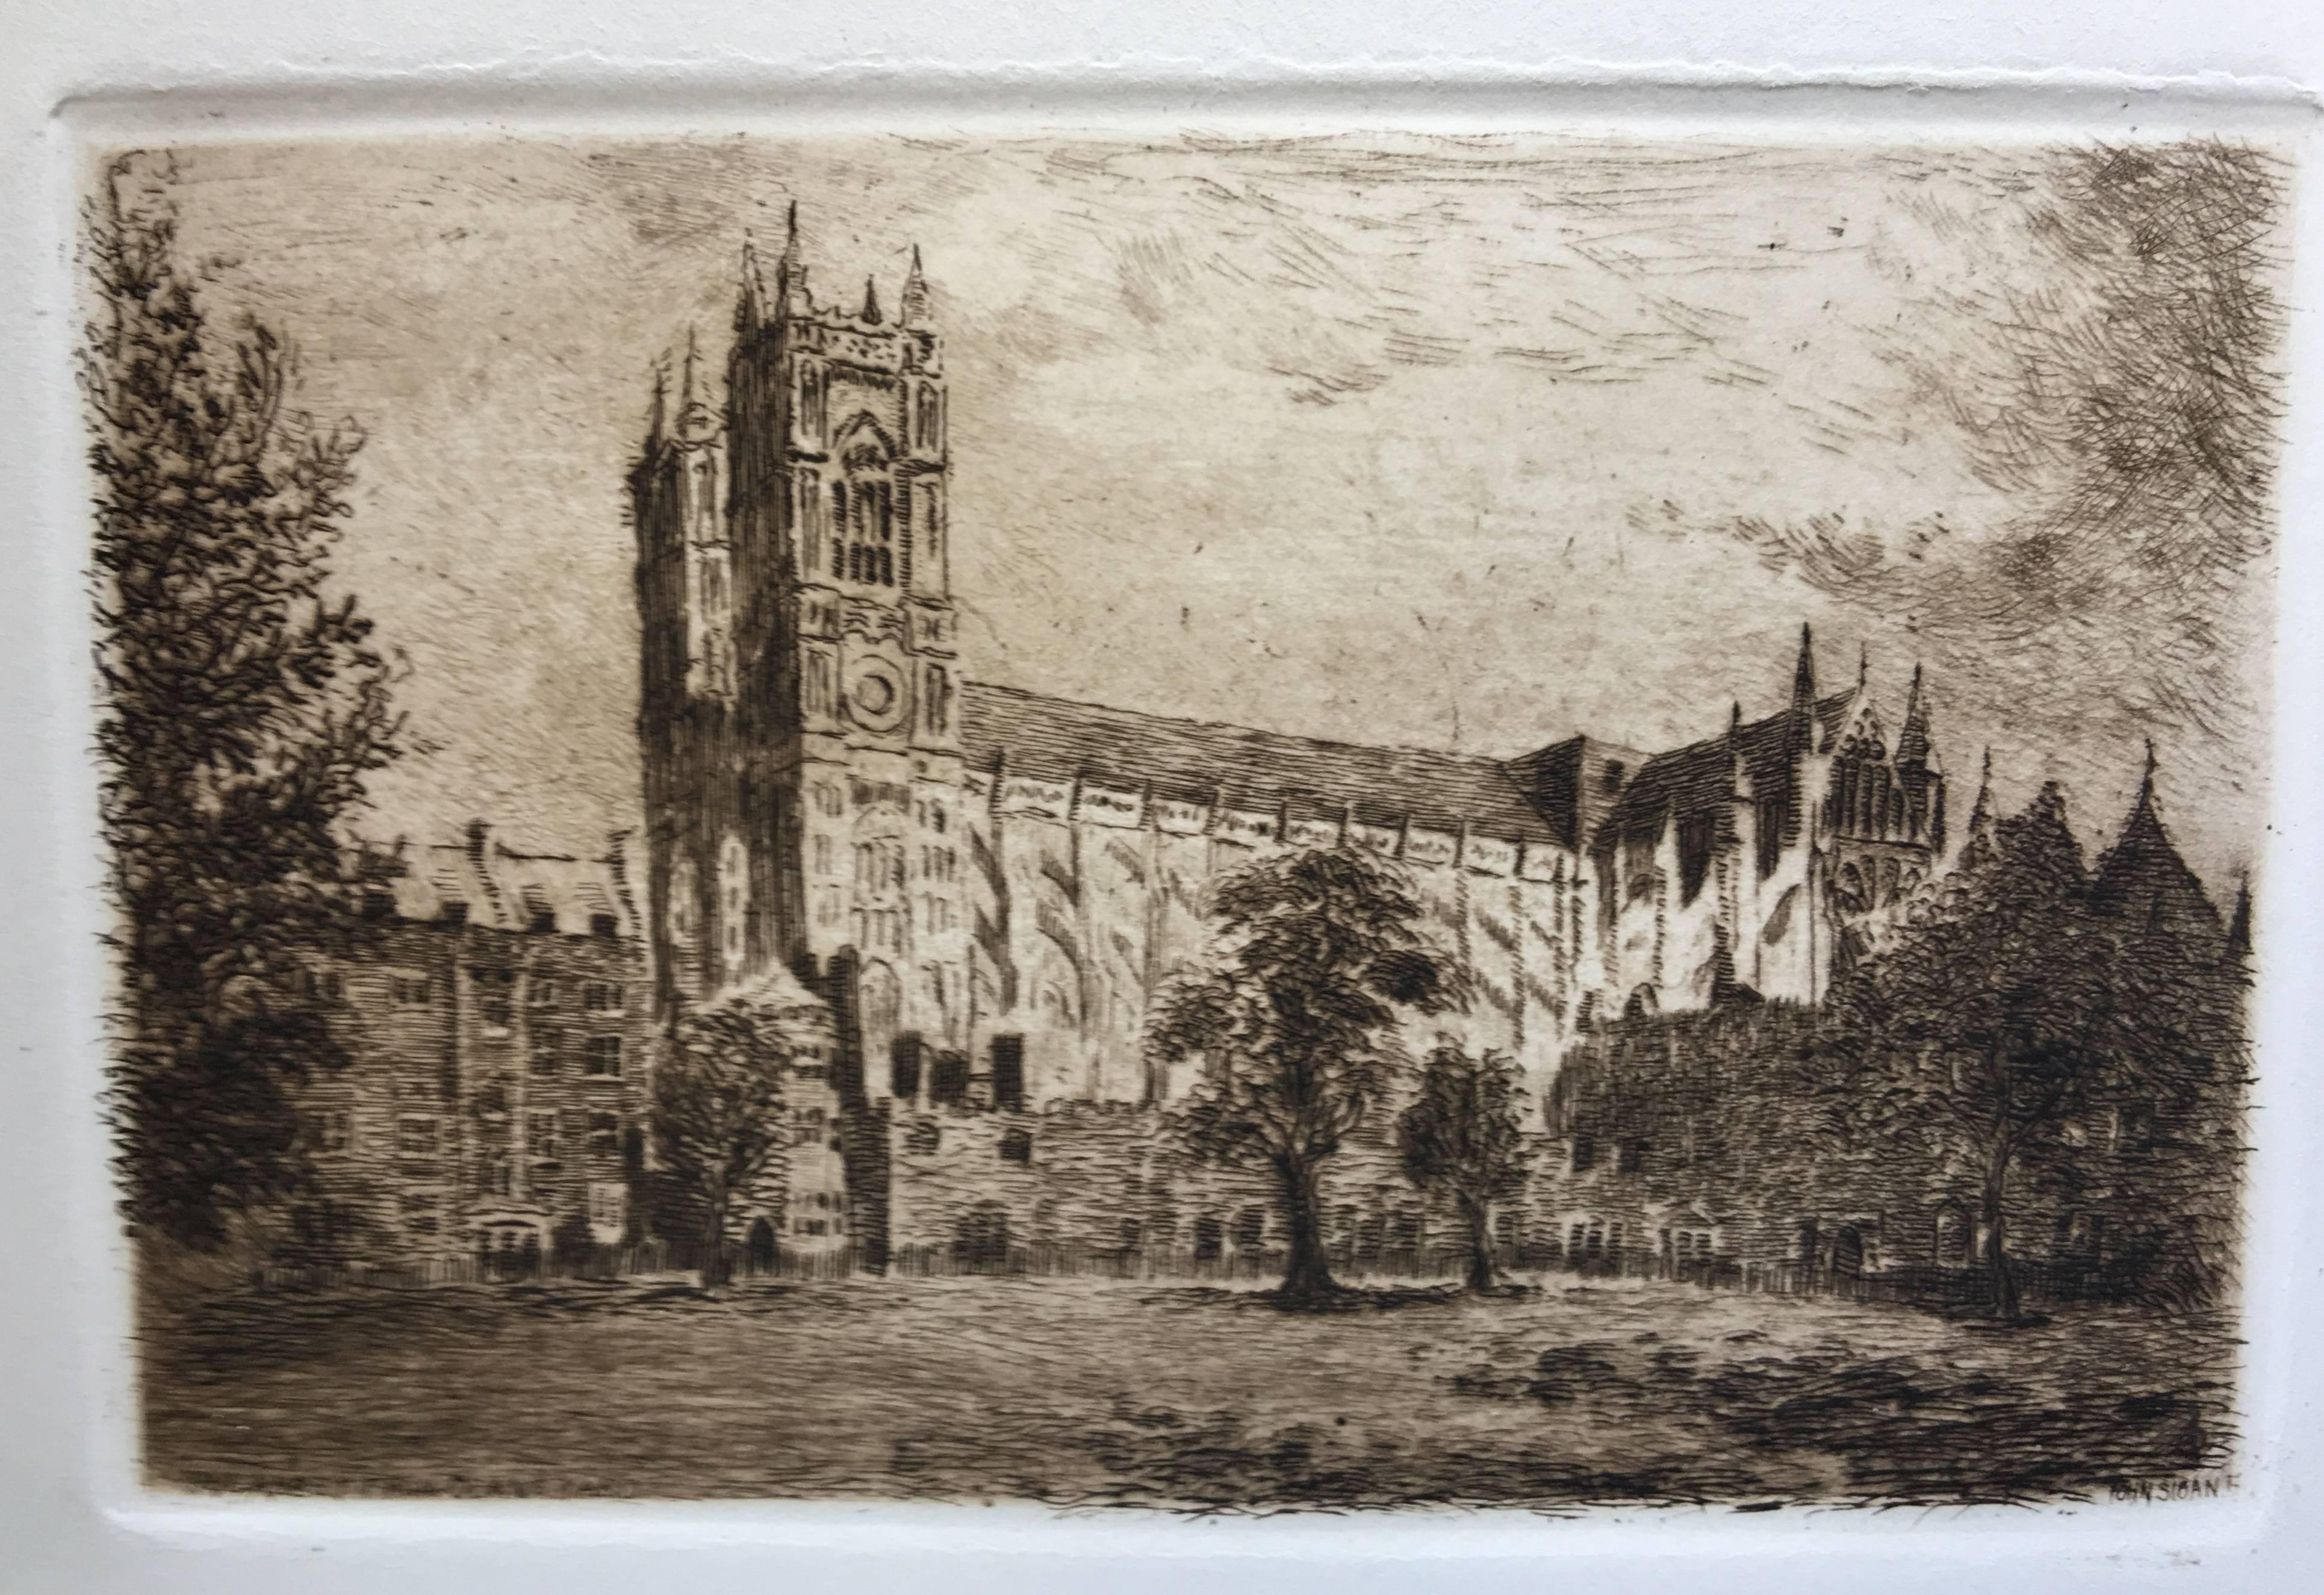 John Sloan ((1871-1951), Westminster Abbey, ca. 1891, vollständiger Satz von 13 Radierungen, Bandeinband mit handbemaltem, vergoldetem Einband [viele der Radierungen signiert und mit verschiedenen Anmerkungen in der Platte versehen]. Referenz: Morse